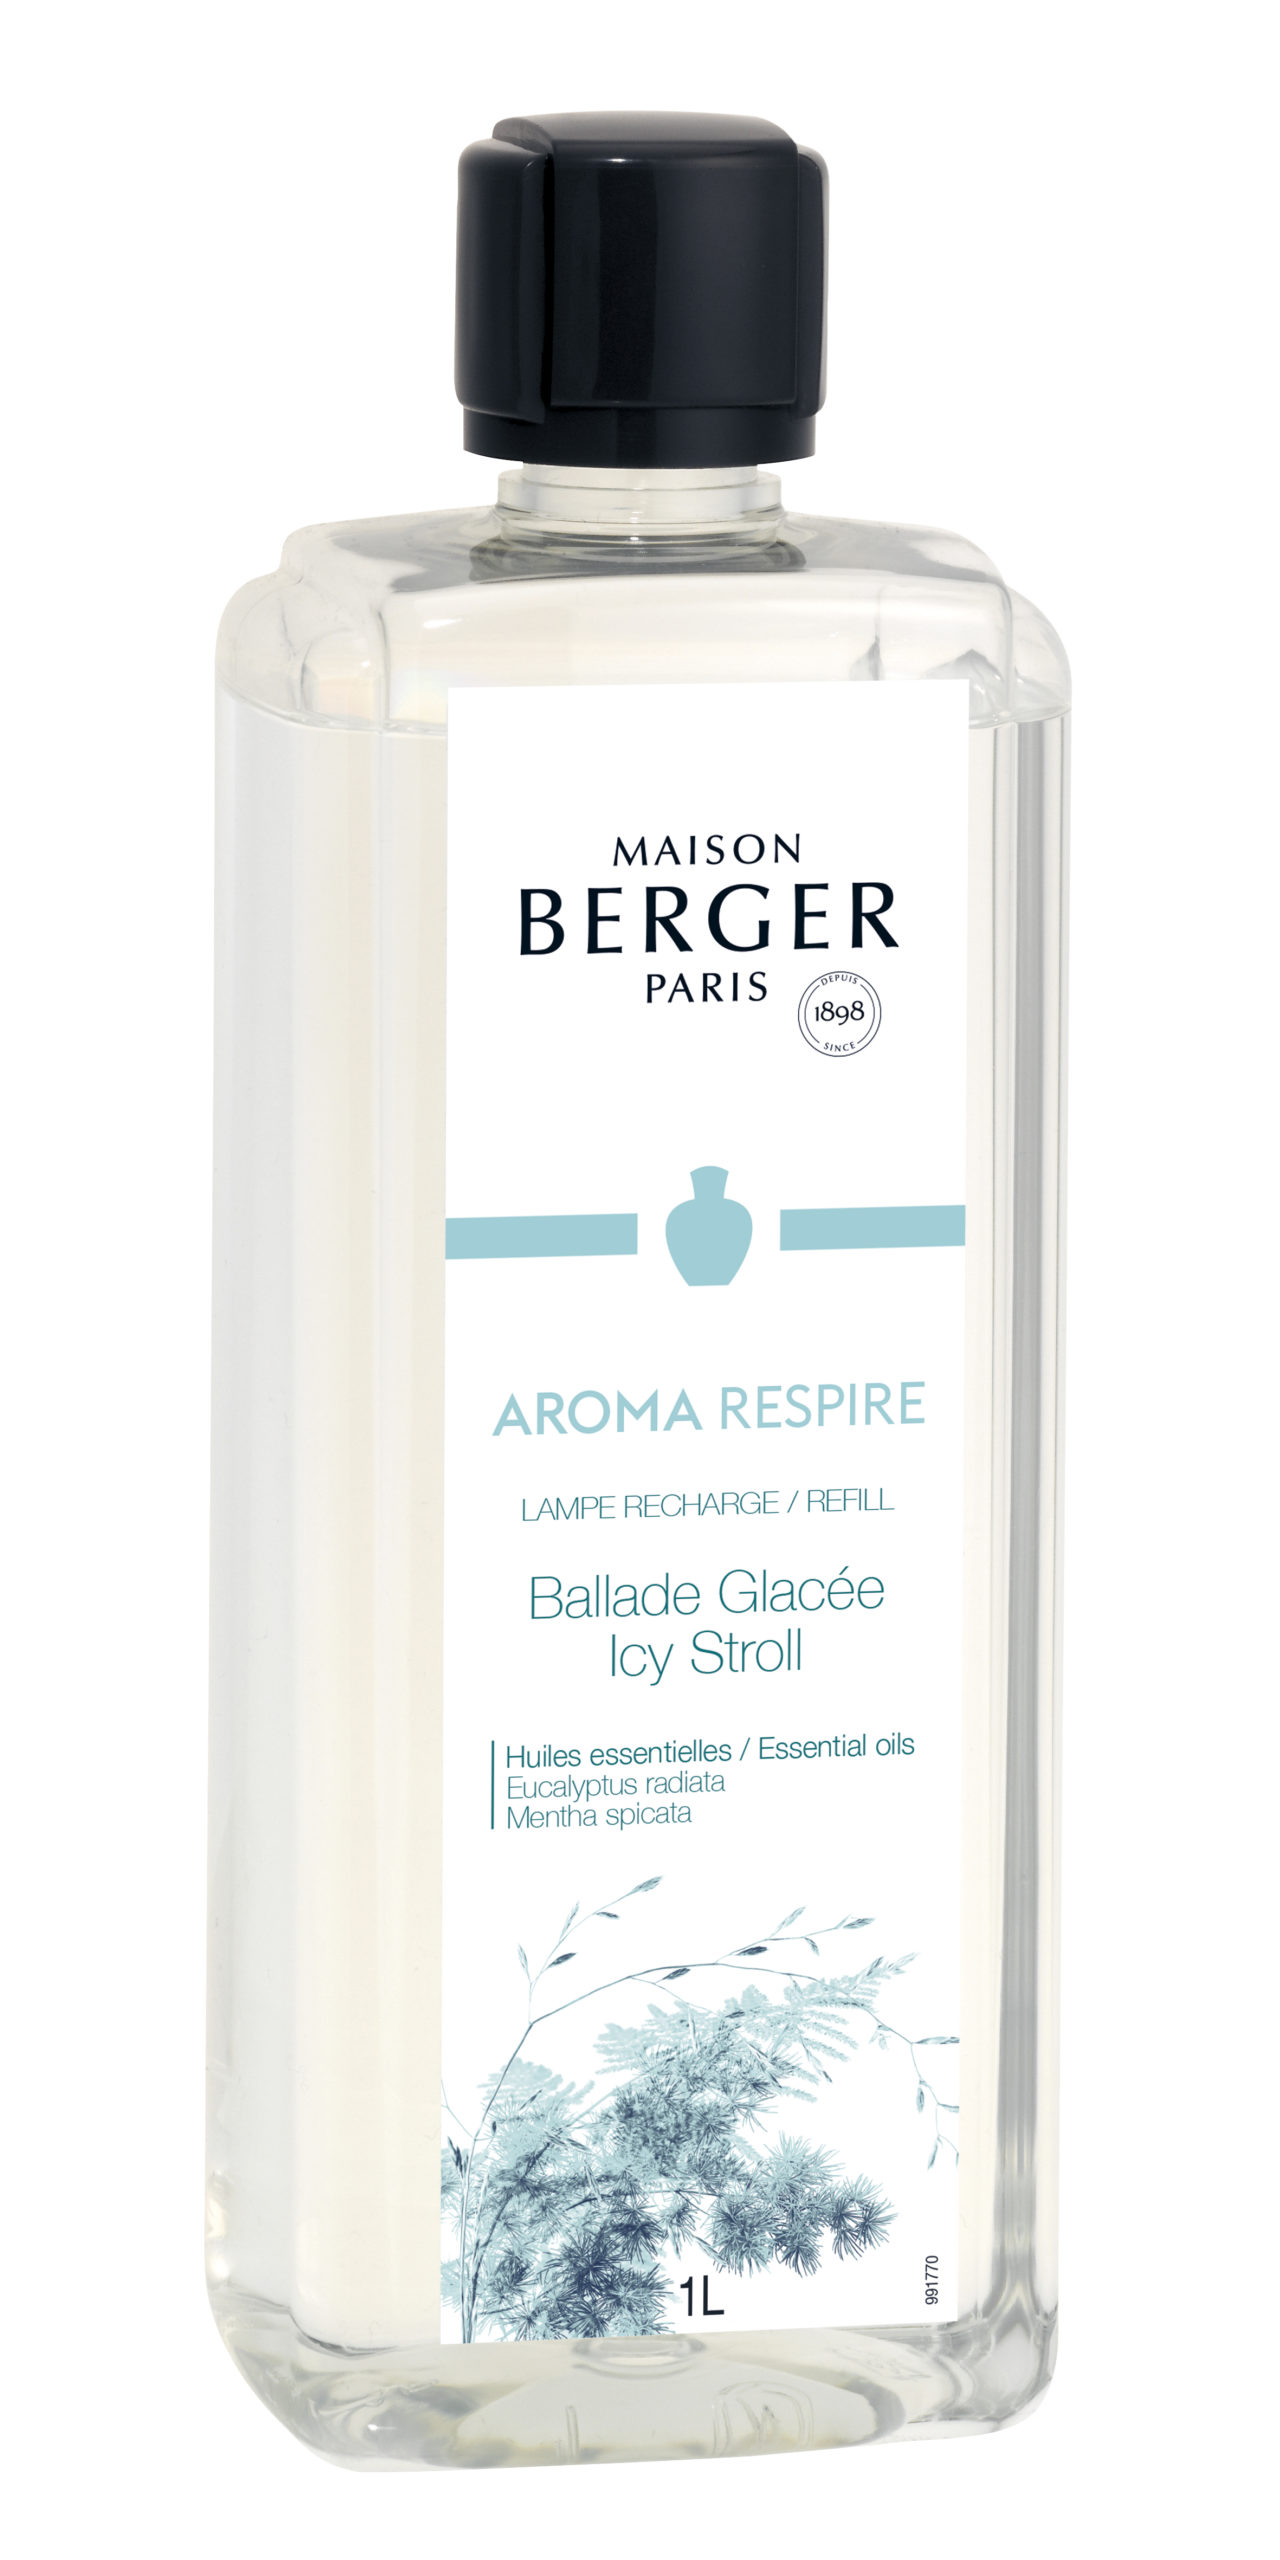 Maison Berger Paris - parfum Aroma Respire - Icy Stroll - 1 liter